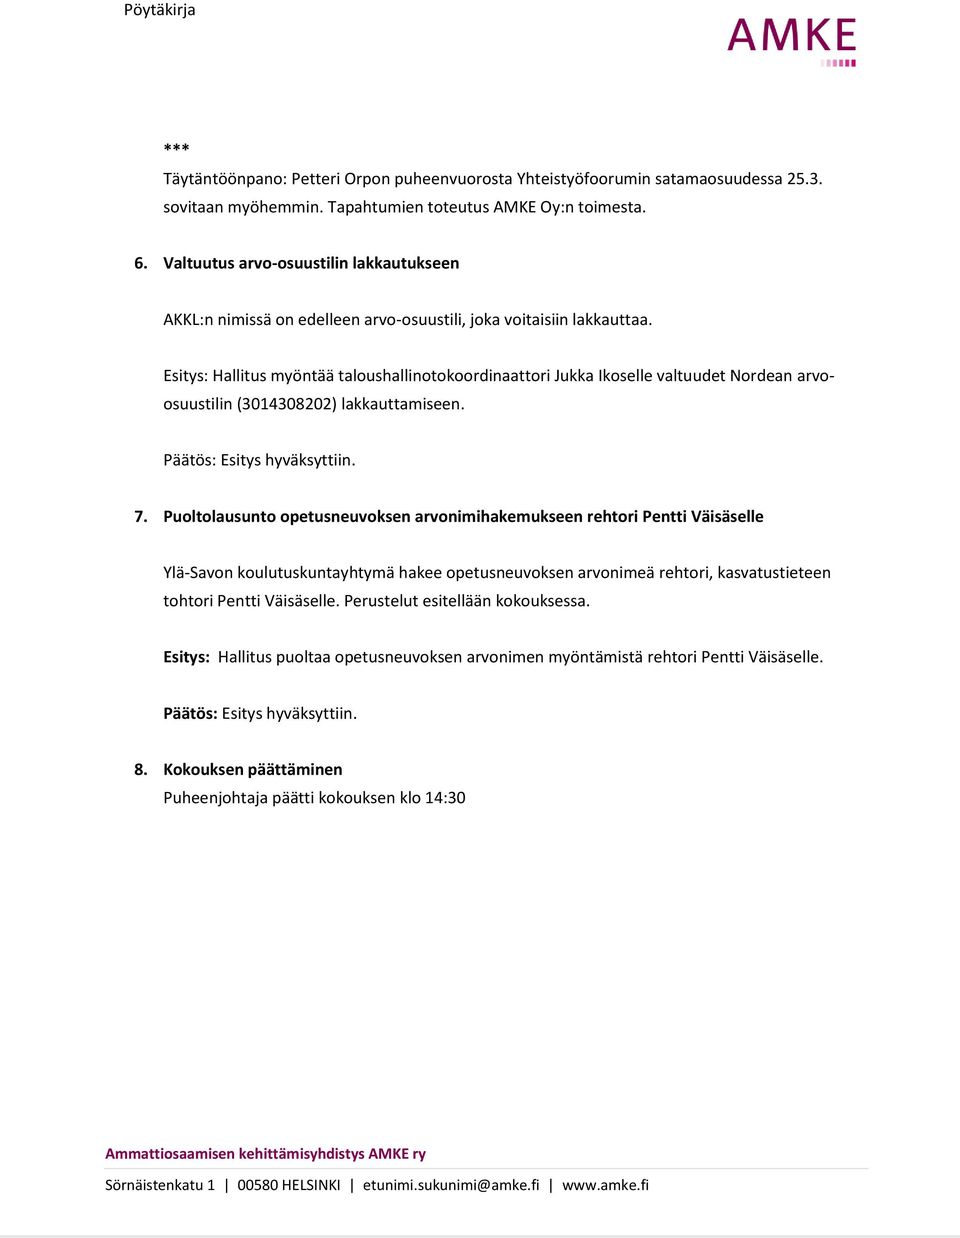 Esitys: Hallitus myöntää taloushallinotokoordinaattori Jukka Ikoselle valtuudet Nordean arvoosuustilin (3014308202) lakkauttamiseen. 7.